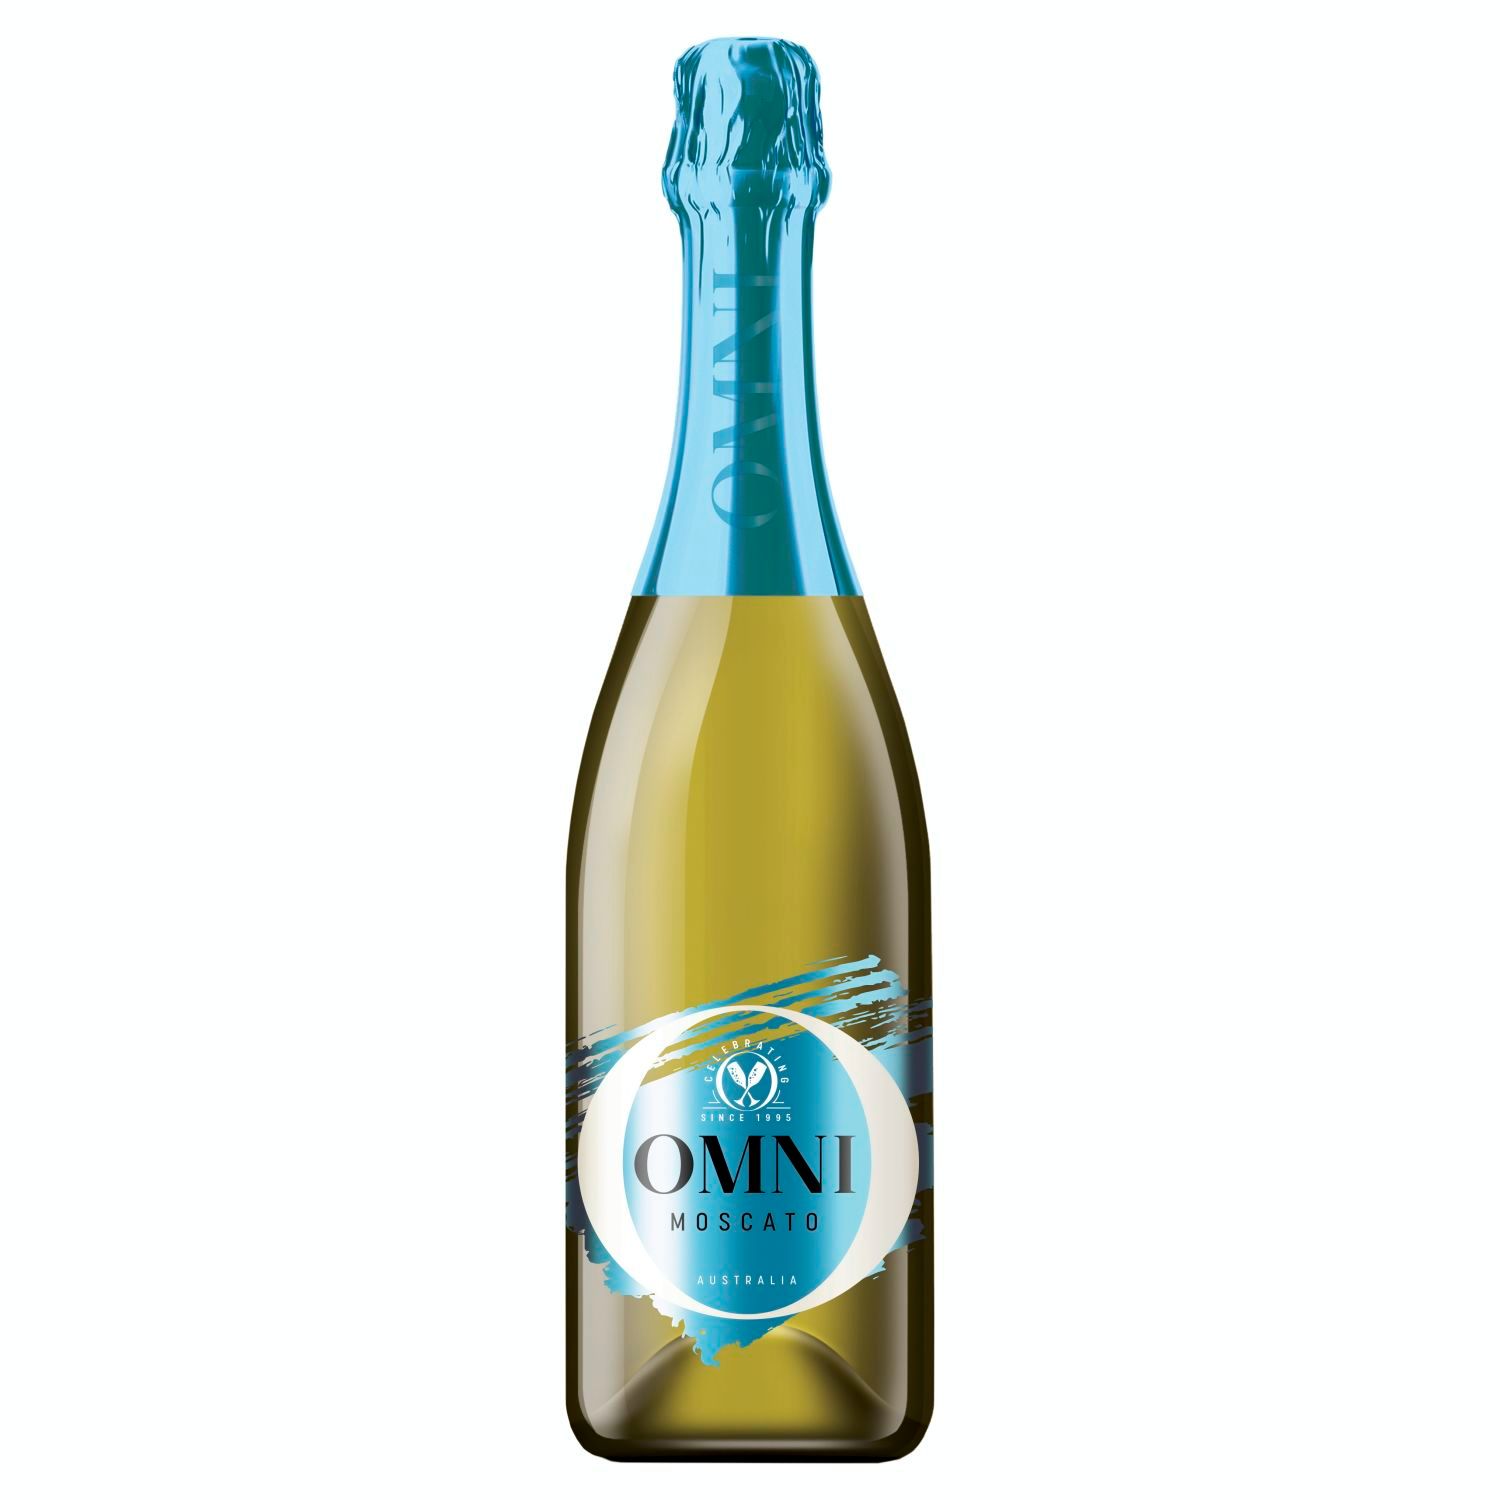 Omni Moscato 750mL<br /> <br />Alcohol Volume: 9.00%<br /><br />Pack Format: Bottle<br /><br />Standard Drinks: 5.3</br /><br />Pack Type: Bottle<br /><br />Country of Origin: Australia<br /><br />Region: Multi-Regional Blend<br /><br />Vintage: Non Vintage<br />